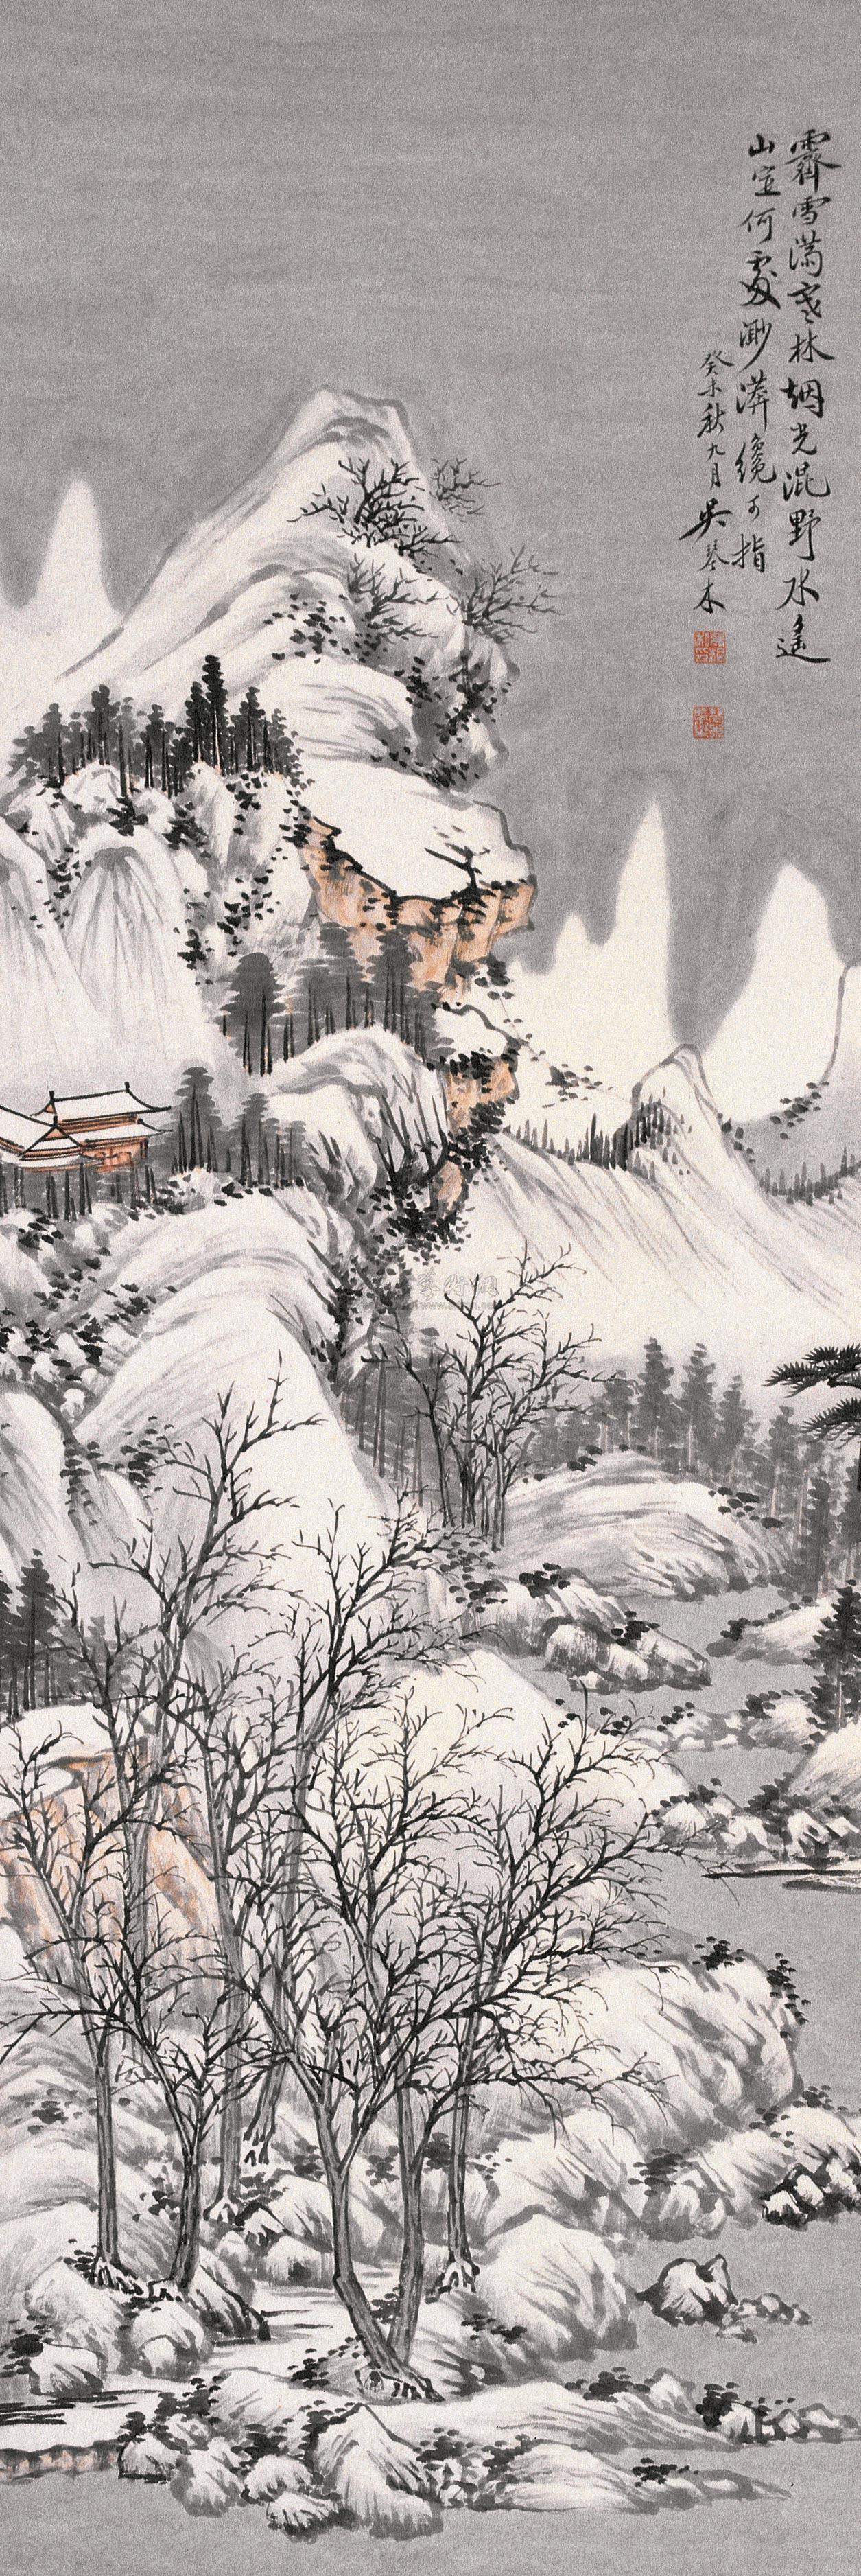 雪景寒林图皴法图片